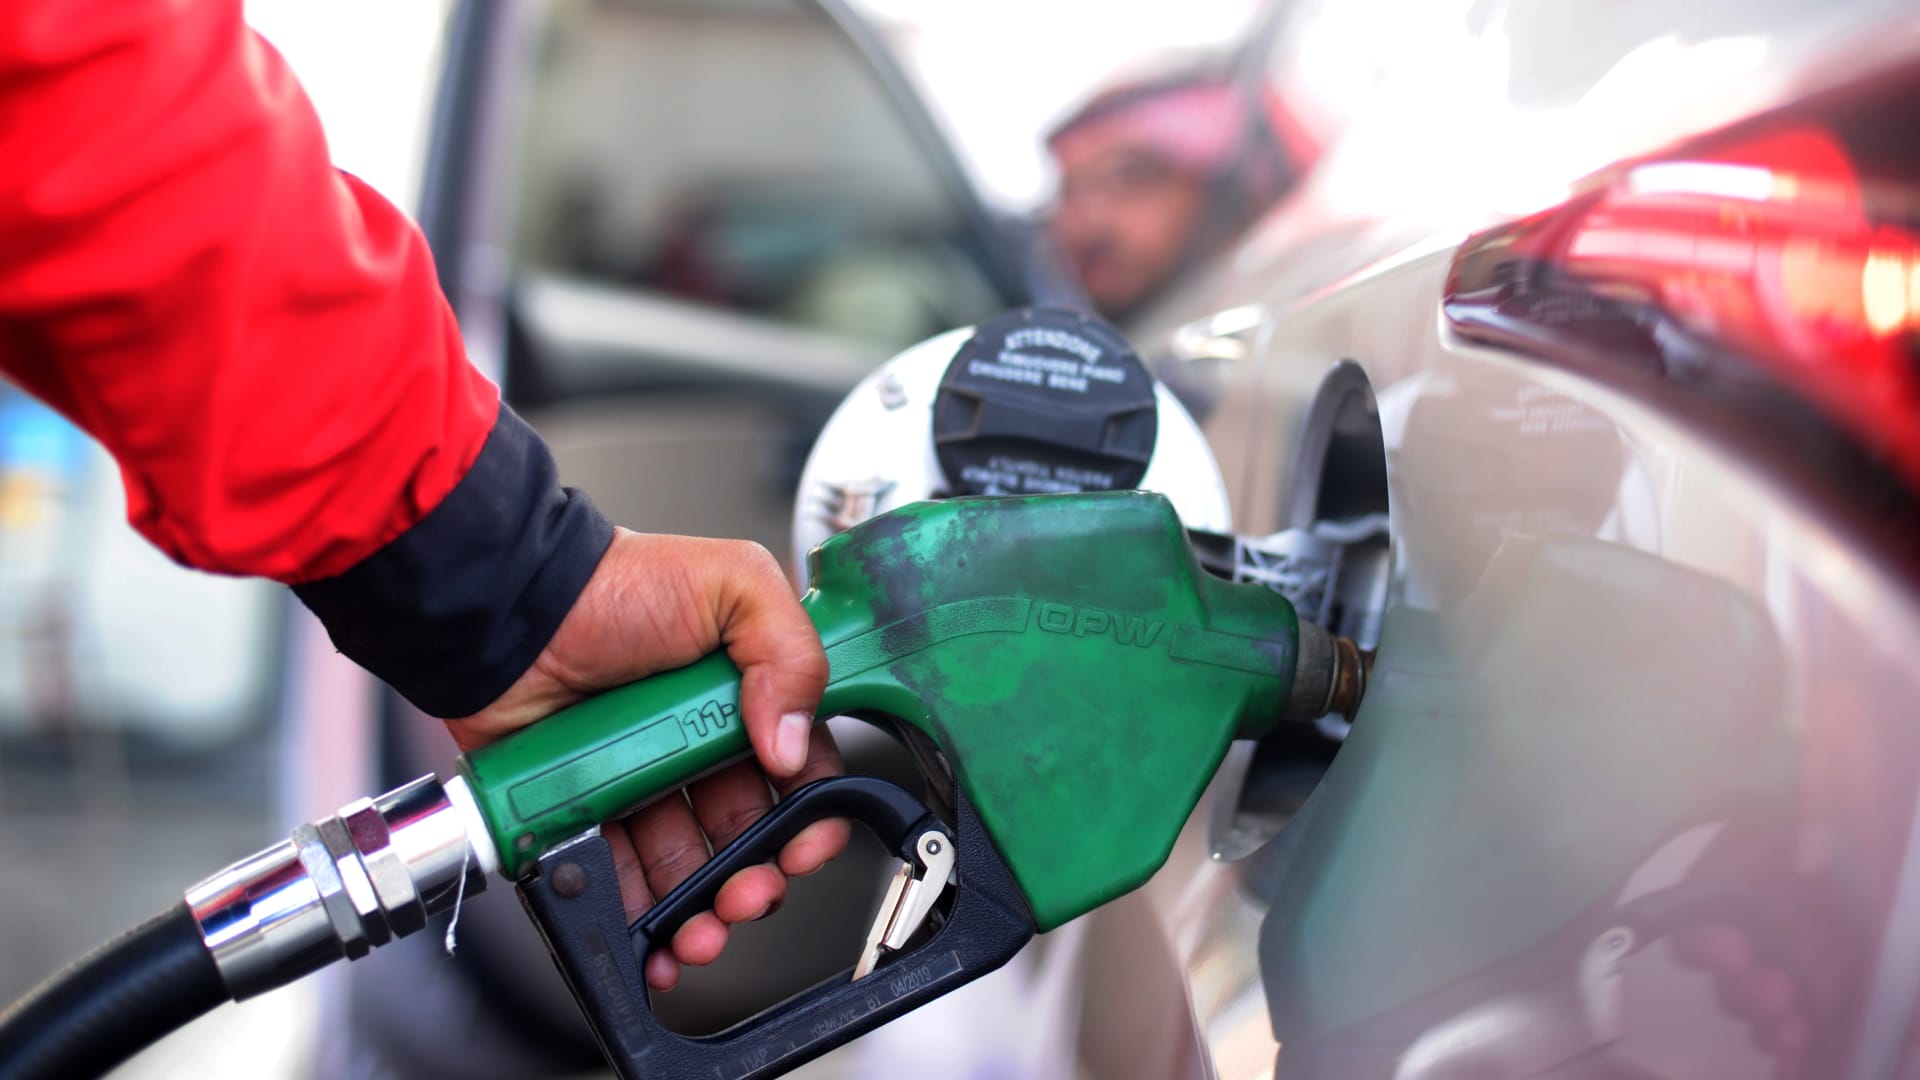 “الان” أسعار البنزين في السعودية لشهر ابريل 2022 الجديدة المعلنة من ارامكو اليوم الاثنين 11/4/2022 بنزين 91 و95